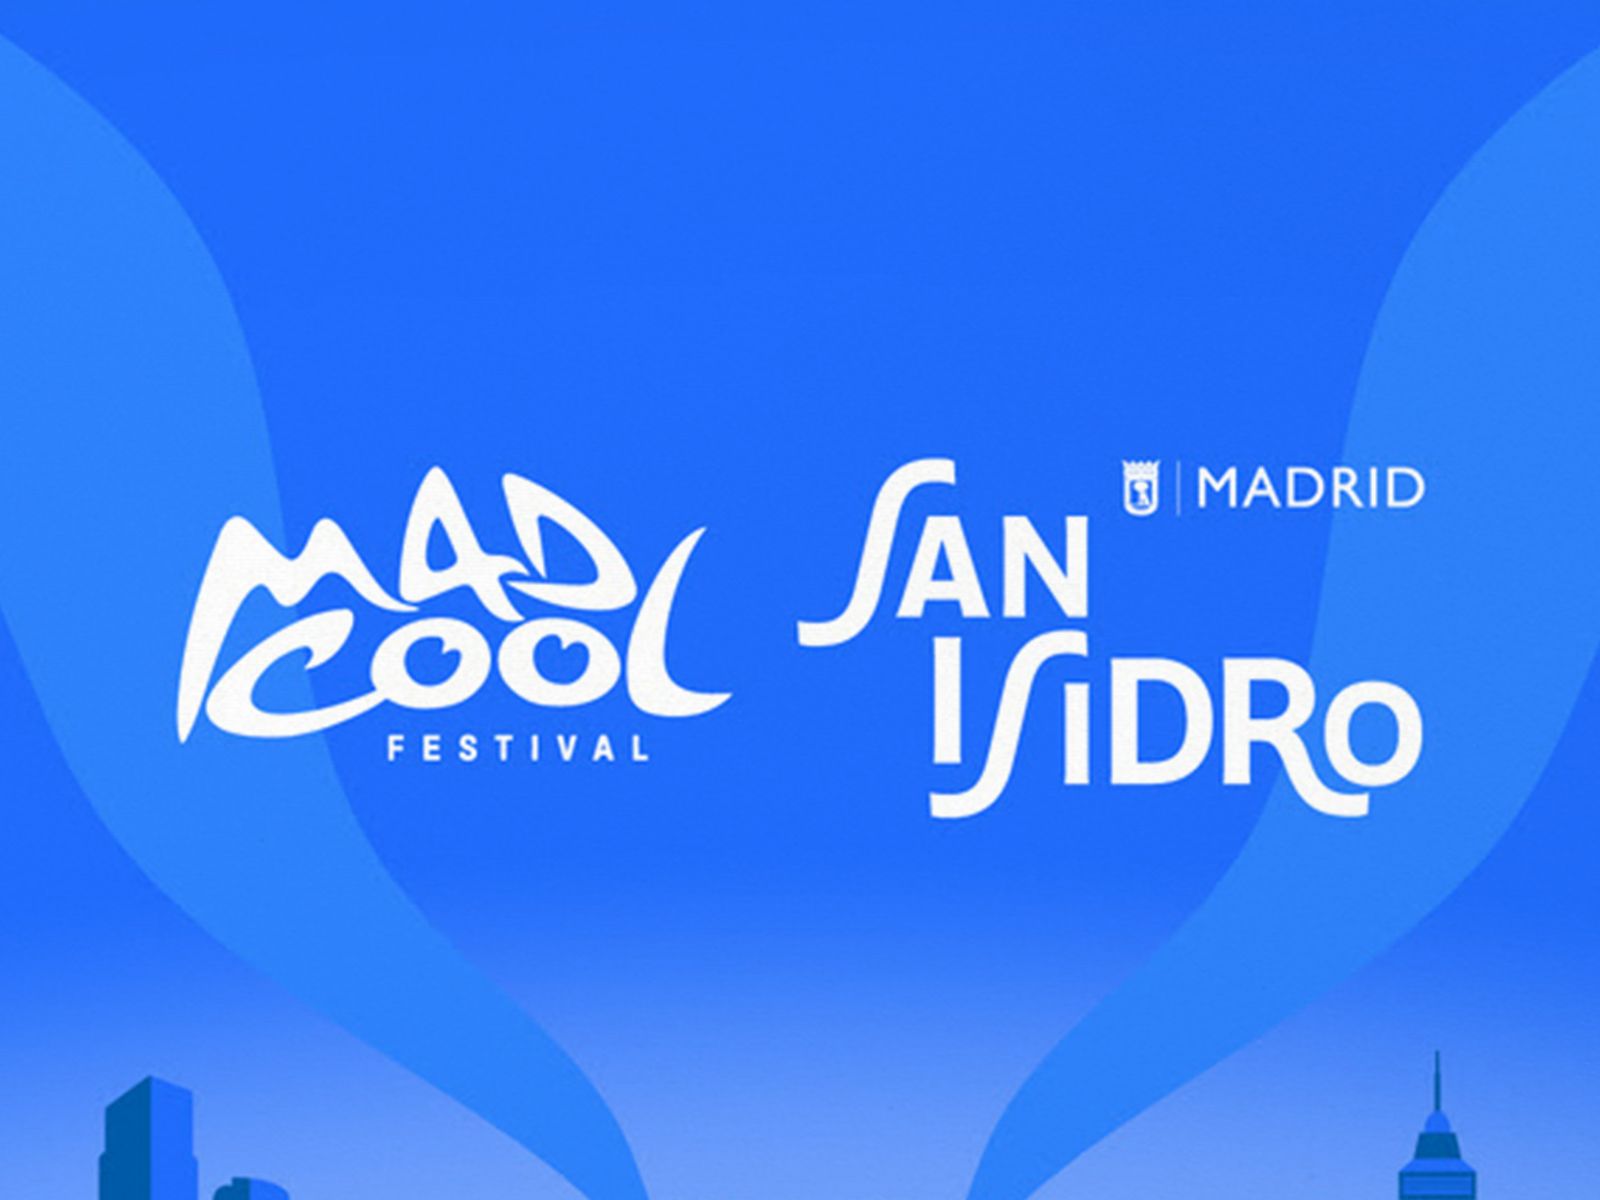 Mad Cool contará con su propio escenario en las fiestas de San Isidro